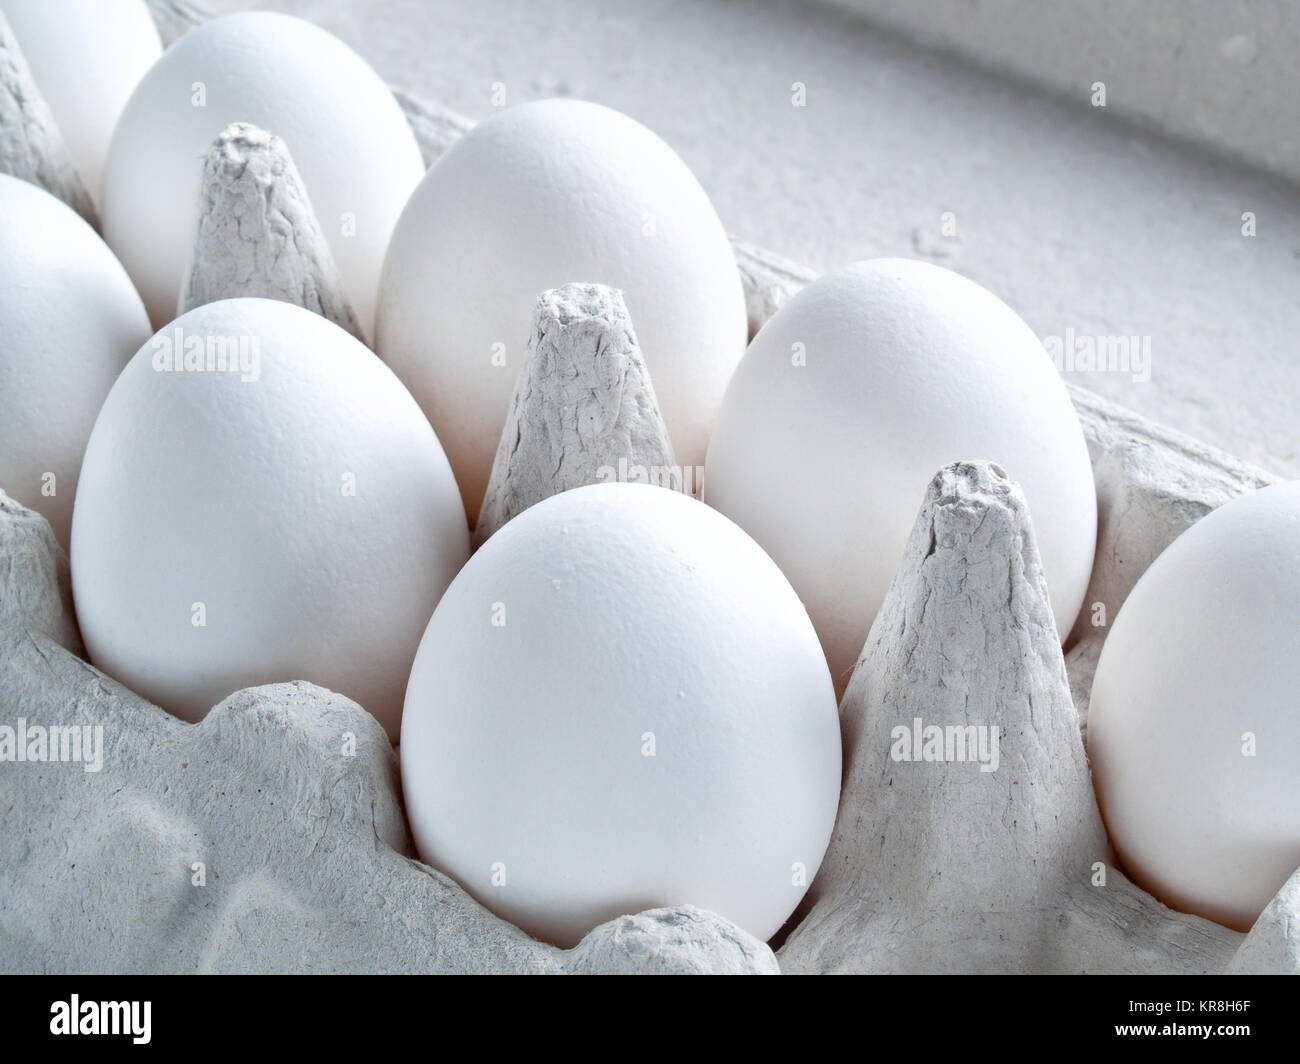 Frische weiße rohe Eier in der Schale Eier bereit für Kochen und Ernährung Lebensmittel liegen in einem offenen karton Behälter für den Transport und die Lagerung von Eiern Stockfoto